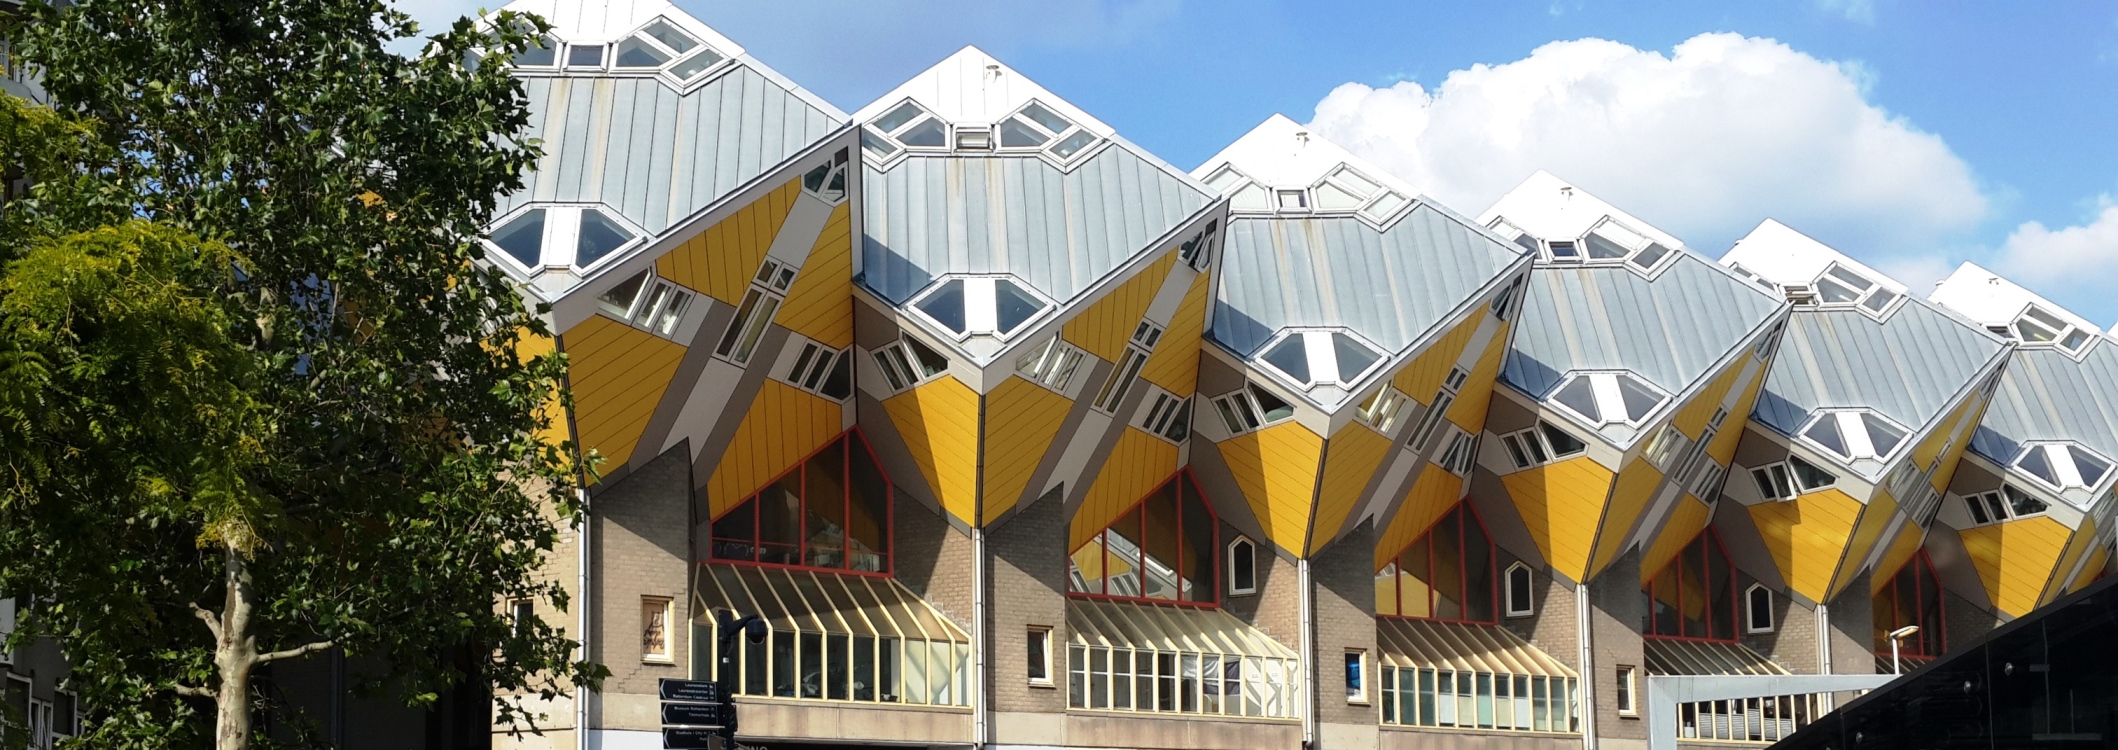 Les maisons cubiques de Rotterdam, Pays-Bas. © Daniel Desjardins